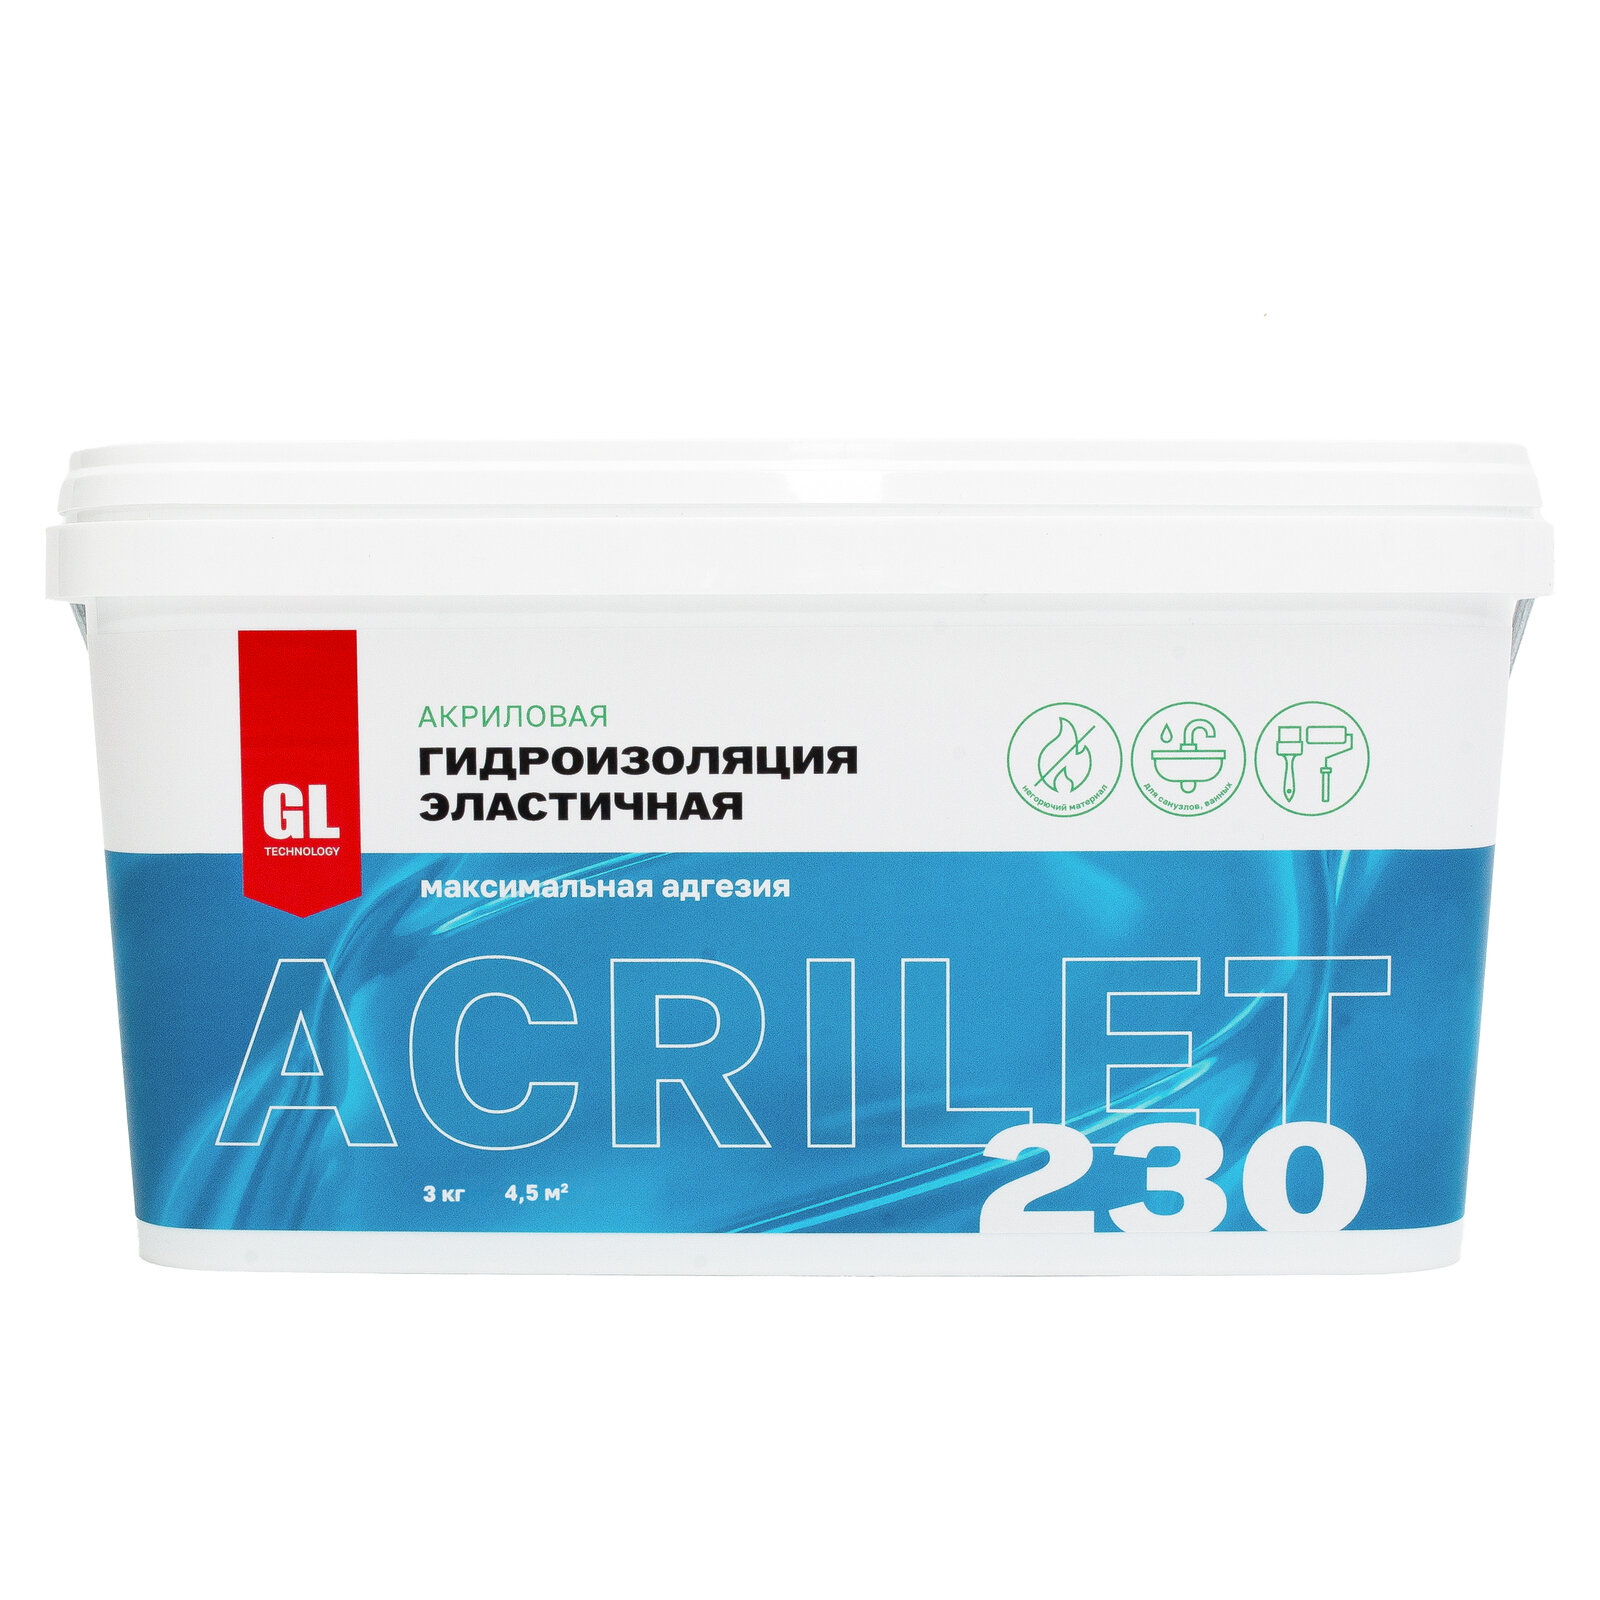 Гидроизоляция эластичная для ванной и влажных помещений ACRILET 230, 3 кг